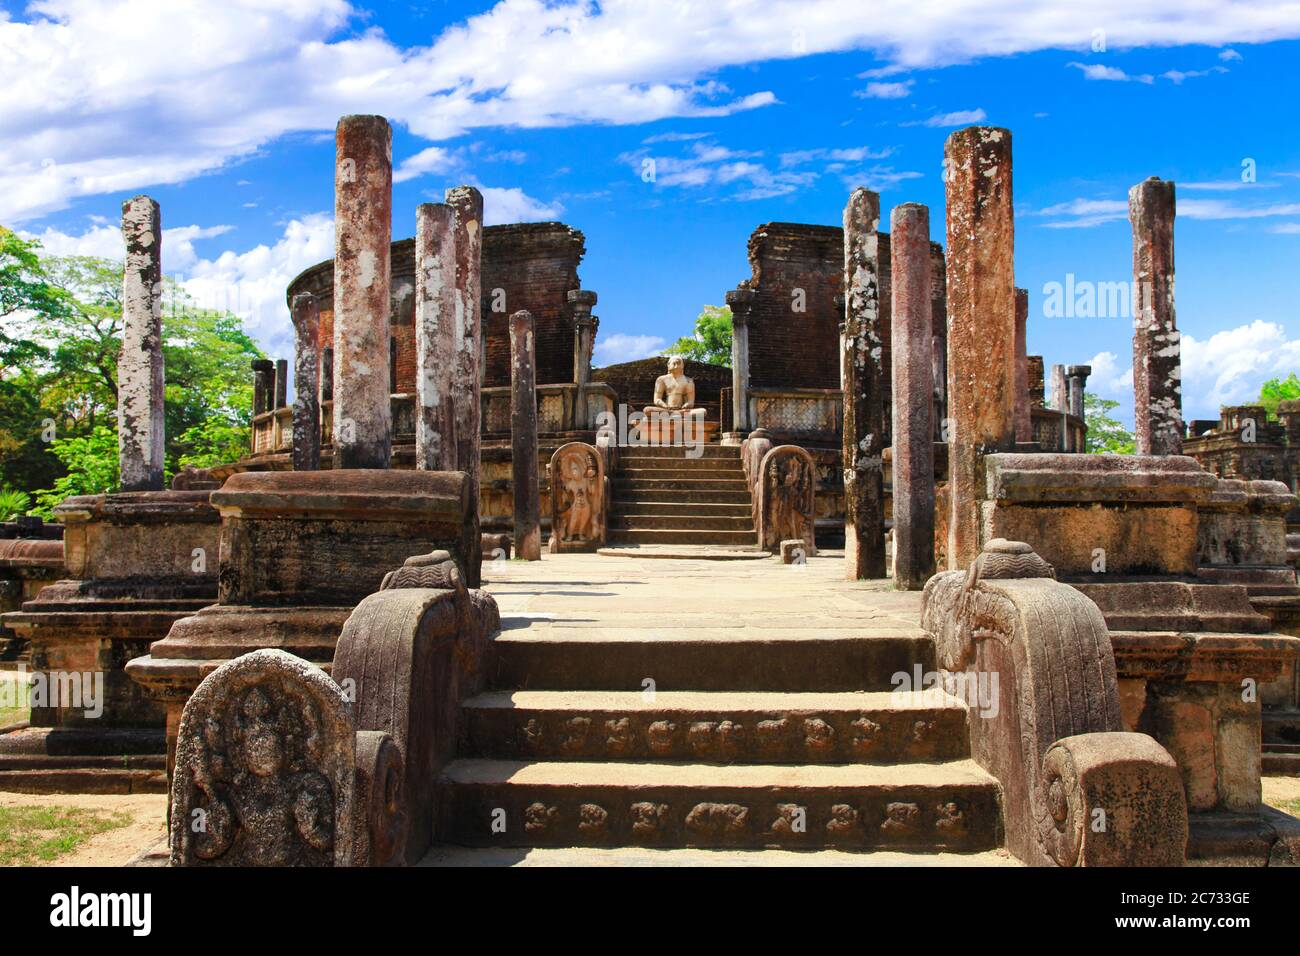 Voyage et monuments au Sri Lanka - ancienne ville de Polonnaruwa, site classé au patrimoine mondial de l'UNESCO. Statue de Bouddha dans le temple de Vatadage Banque D'Images